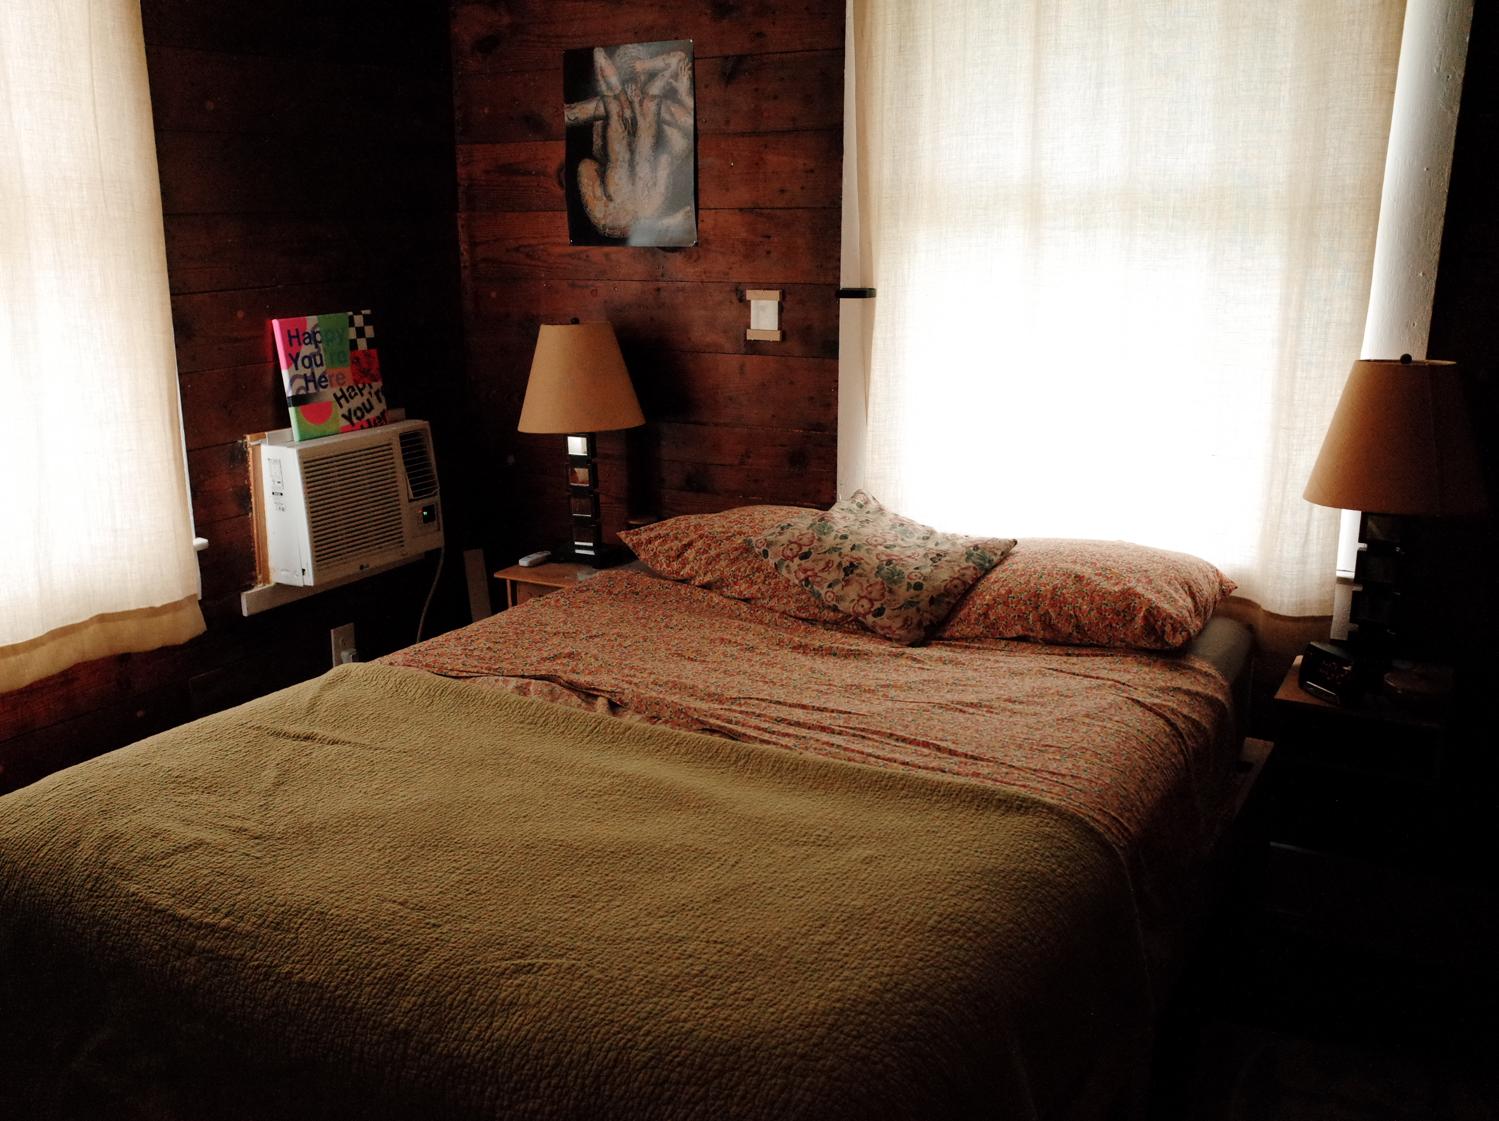 Garretts bedroom